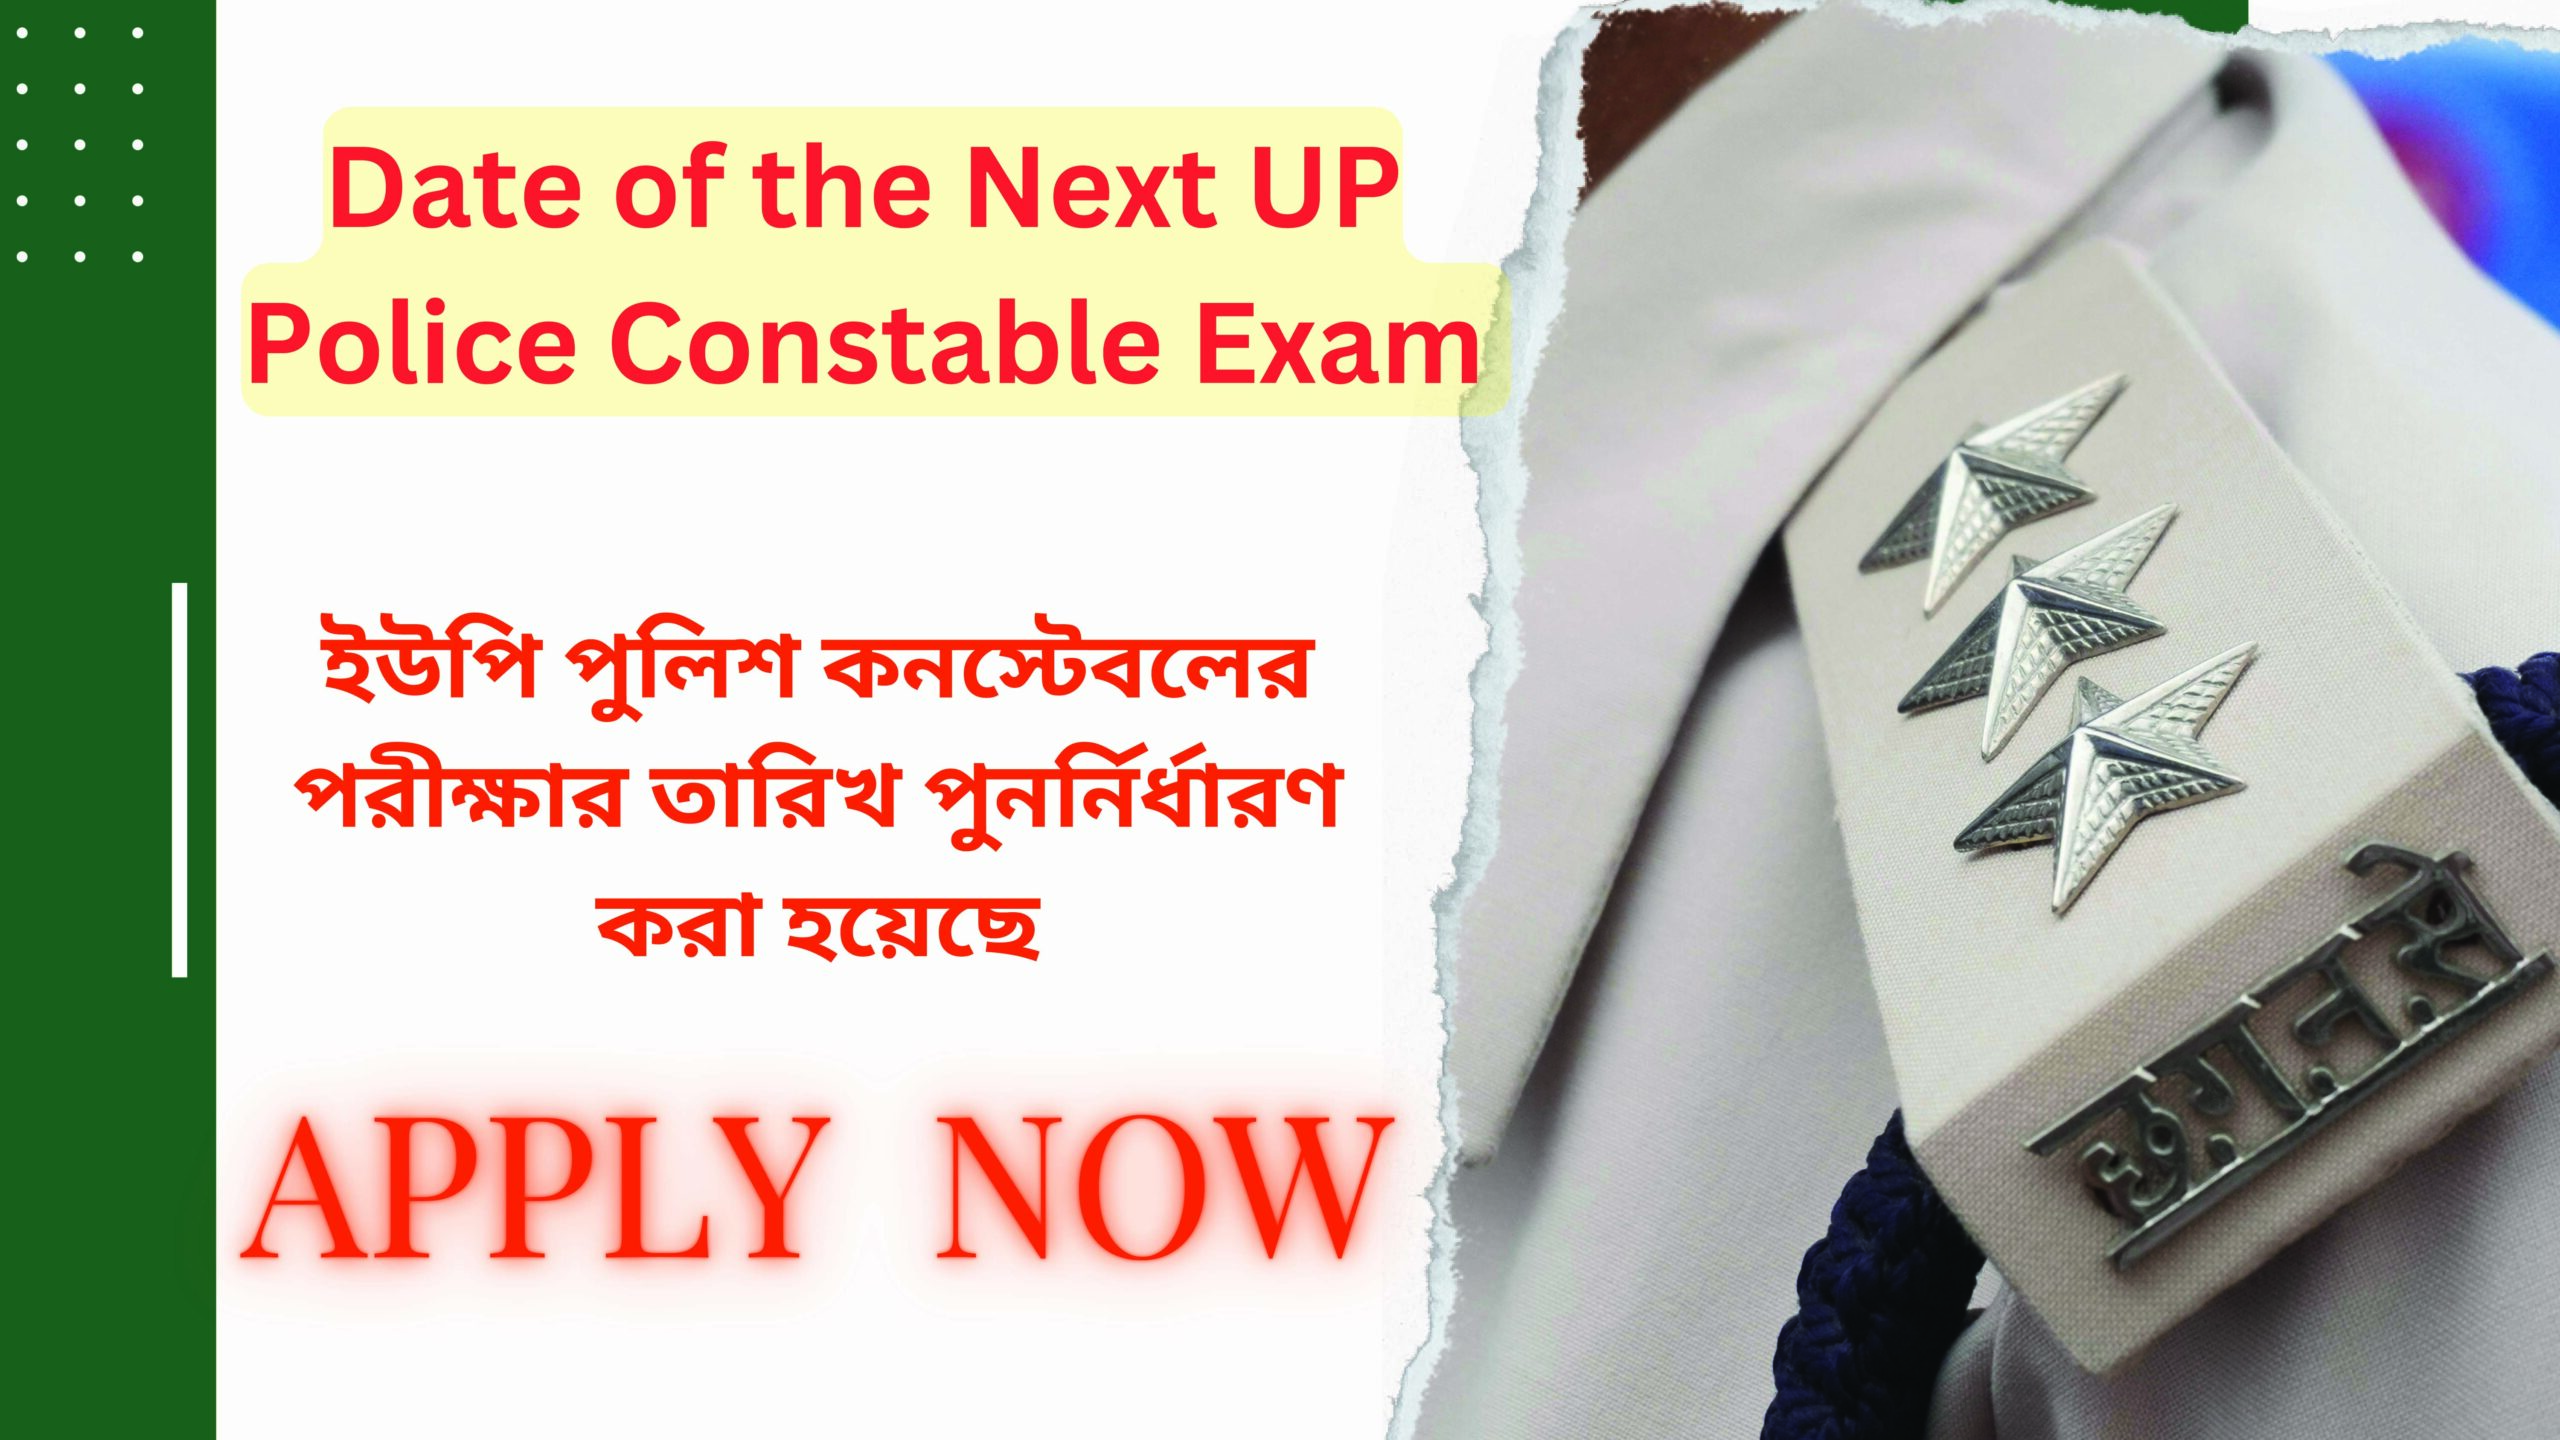 New date of UP Police Constable exam revealed : ইউপি পুলিশ কনস্টেবলের পরীক্ষার তারিখ পুনর্নির্ধারণ করা হয়েছে